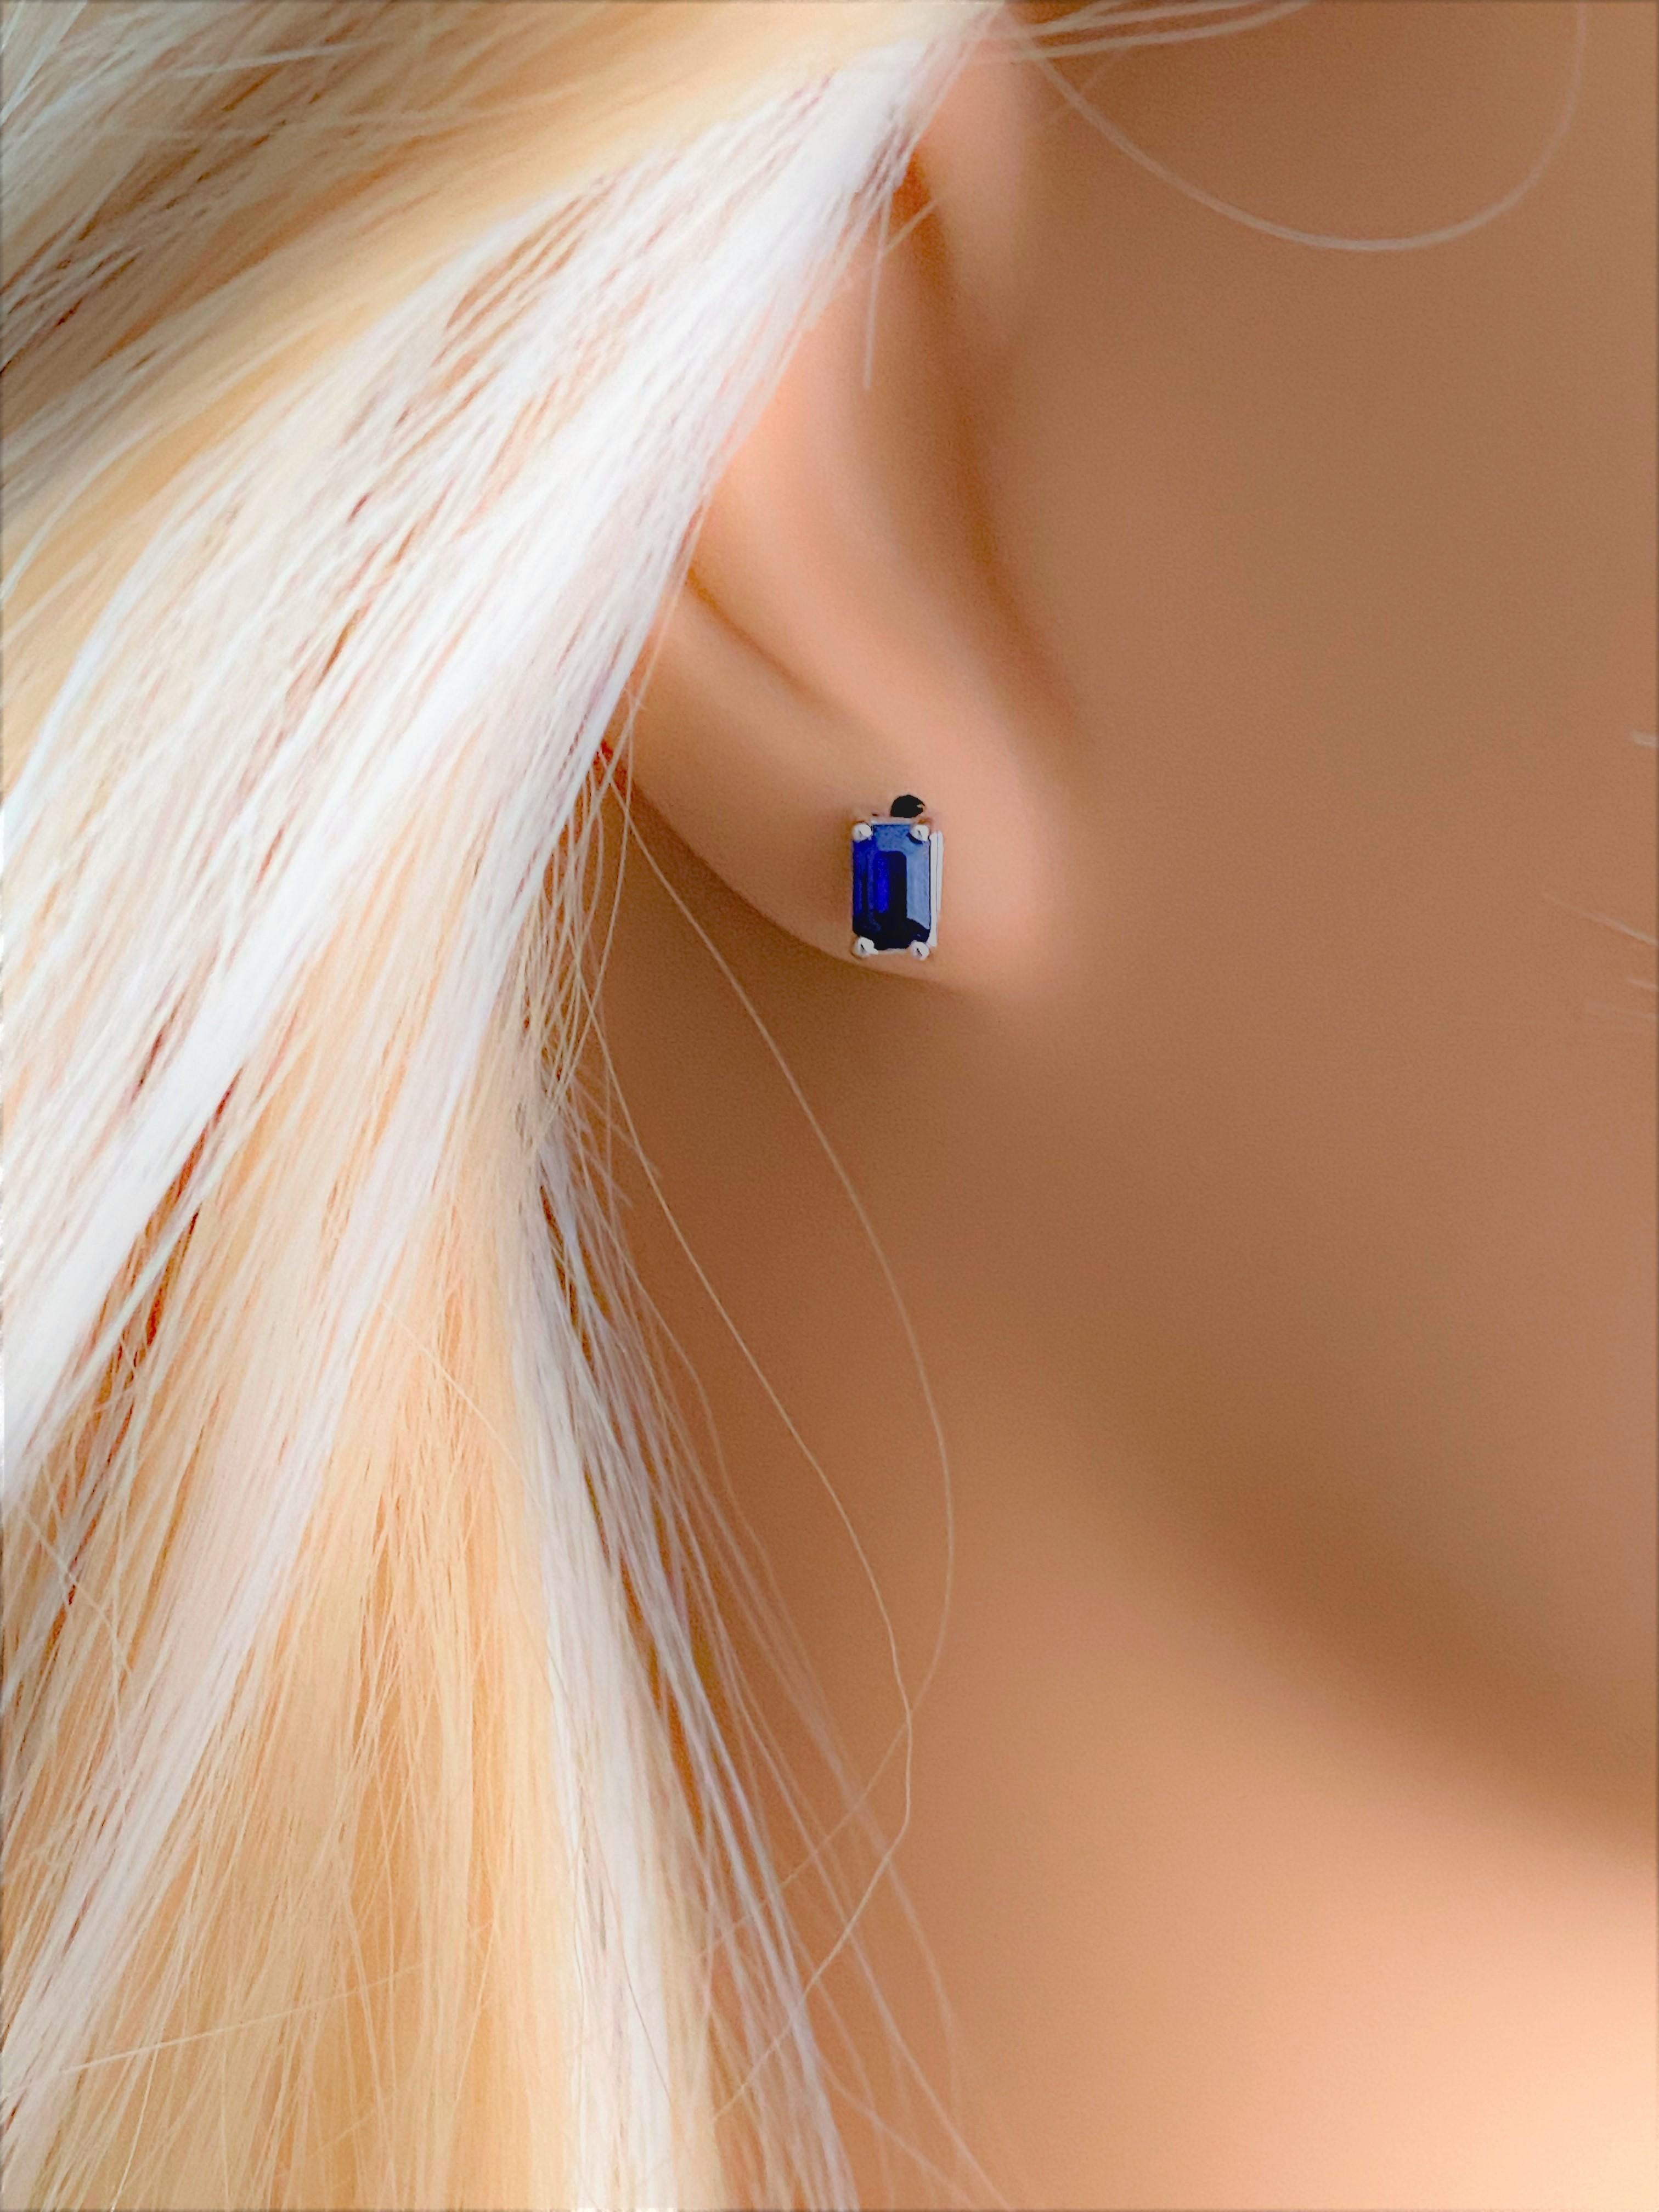 emerald cut sapphire earrings